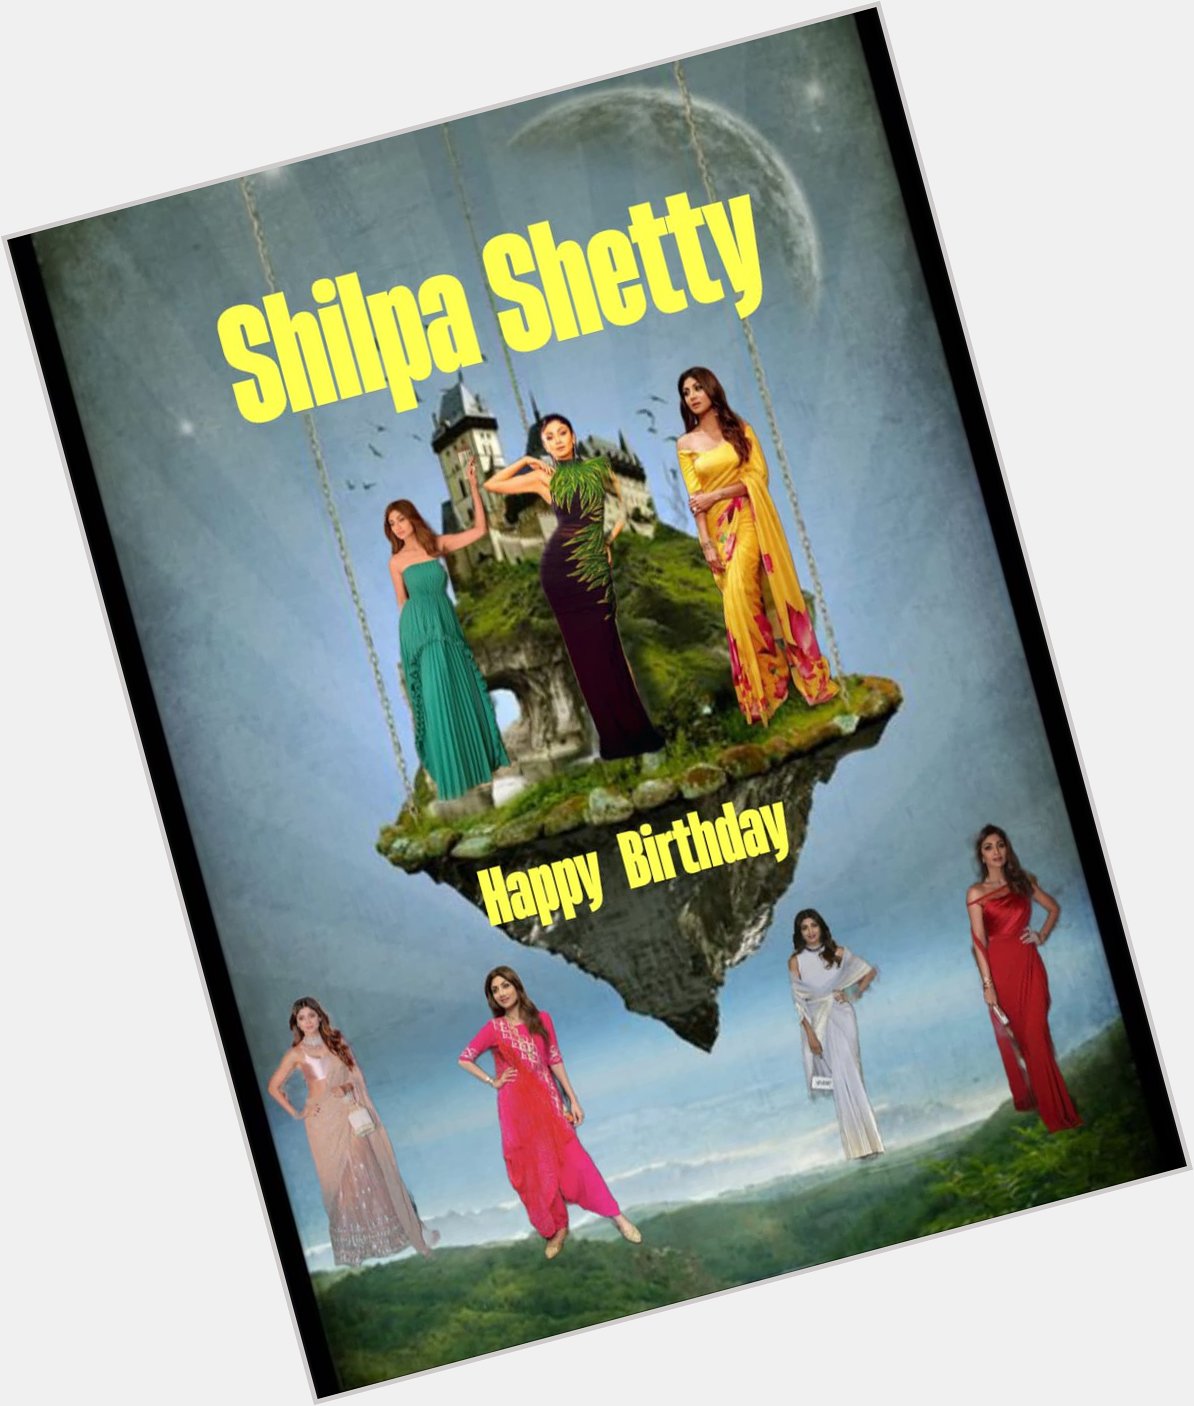 Happy Birthday shilpa shetty 